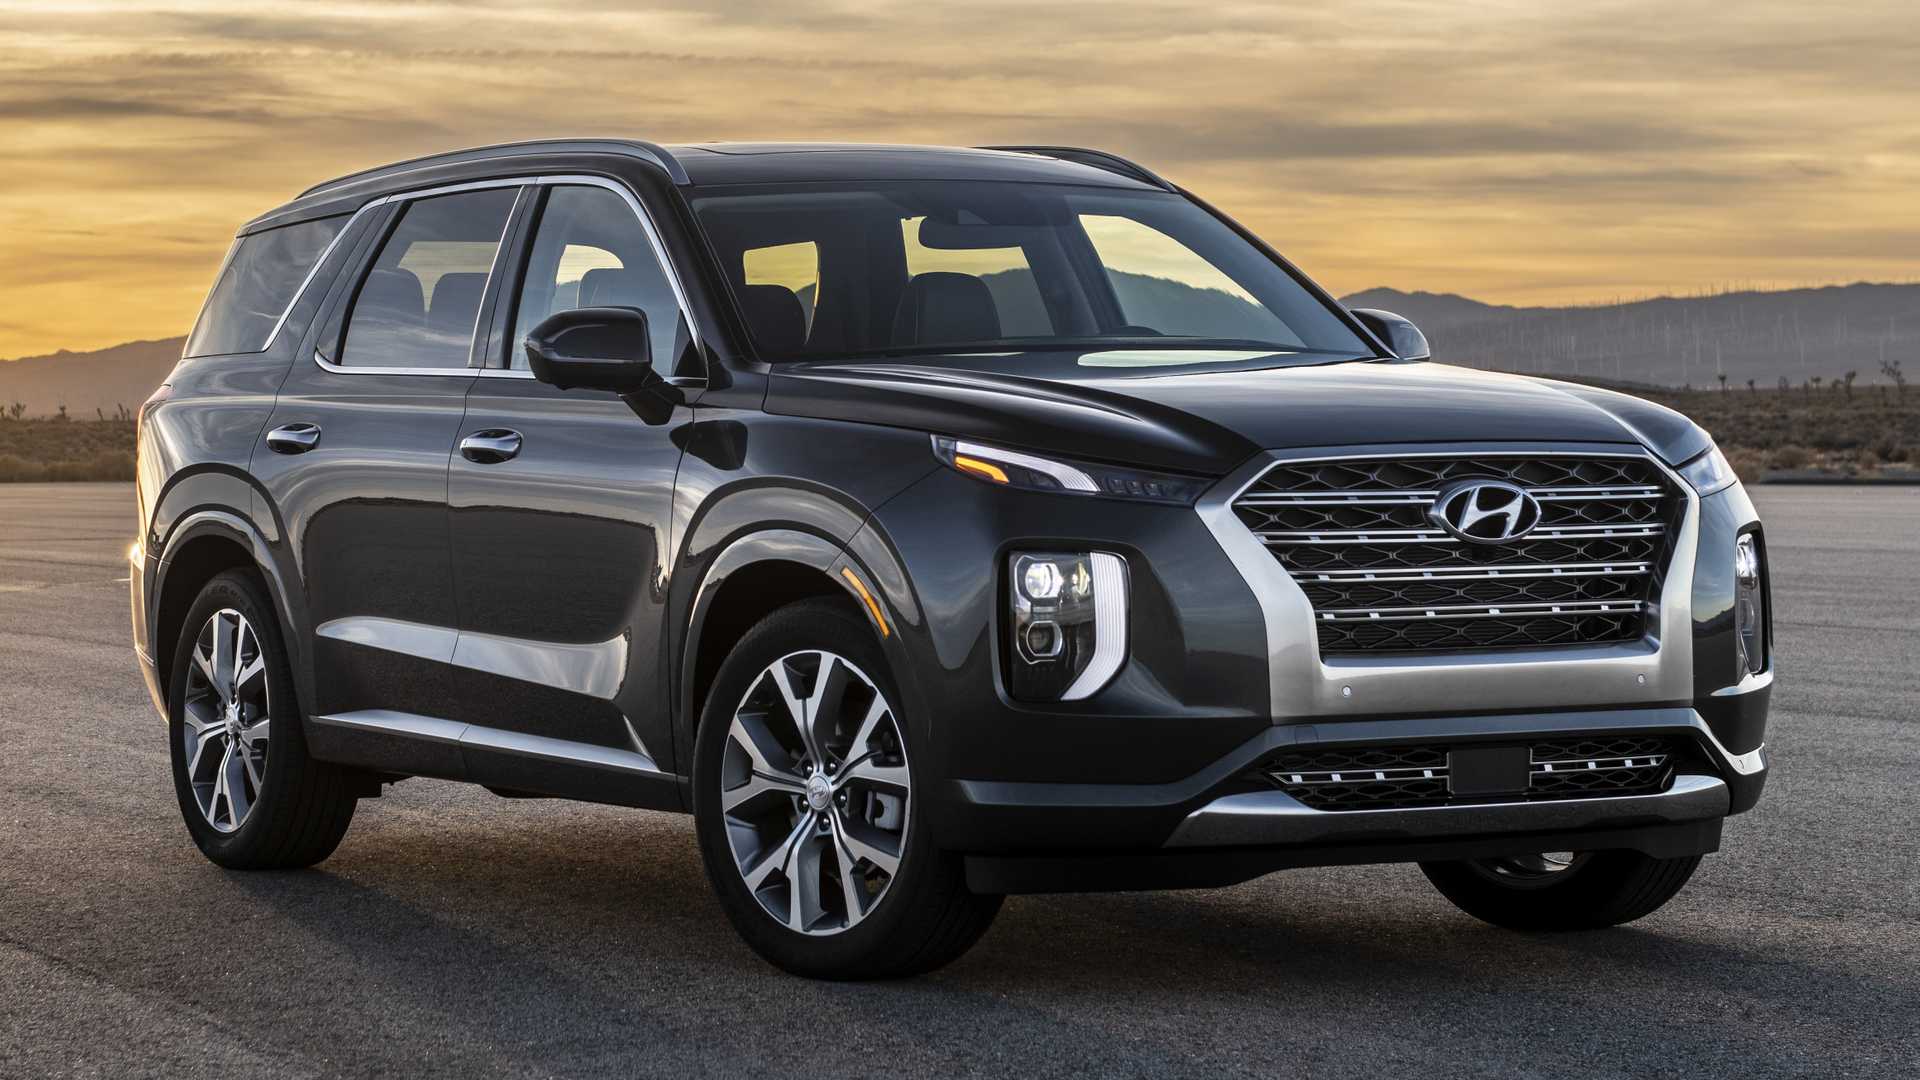 Hyundai dempinguet na amerikanskom rynke